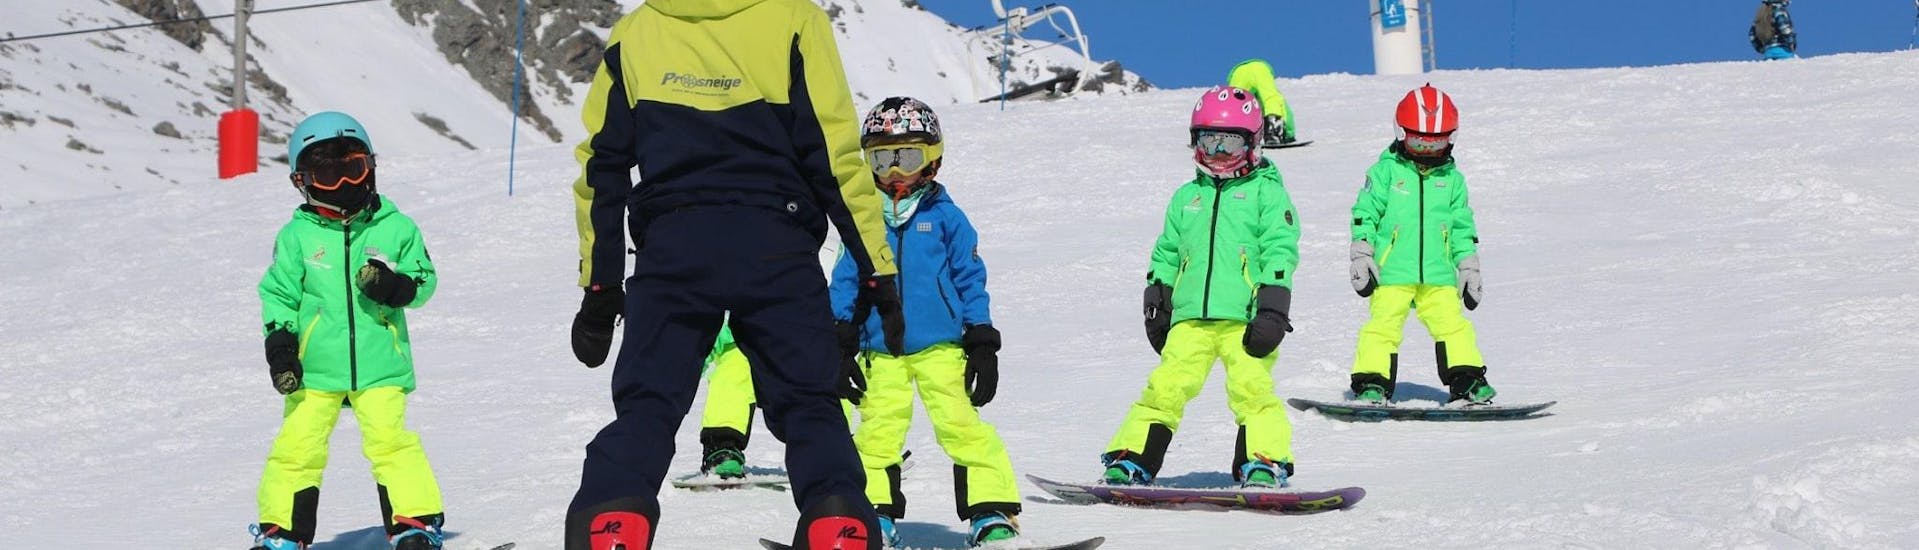 Un maestro della scuola Prosneige Alpe d'Huez insegna ai bambini sorridenti durante le lezioni di snowboard per bambini di tutte le età e di tutti i livelli.